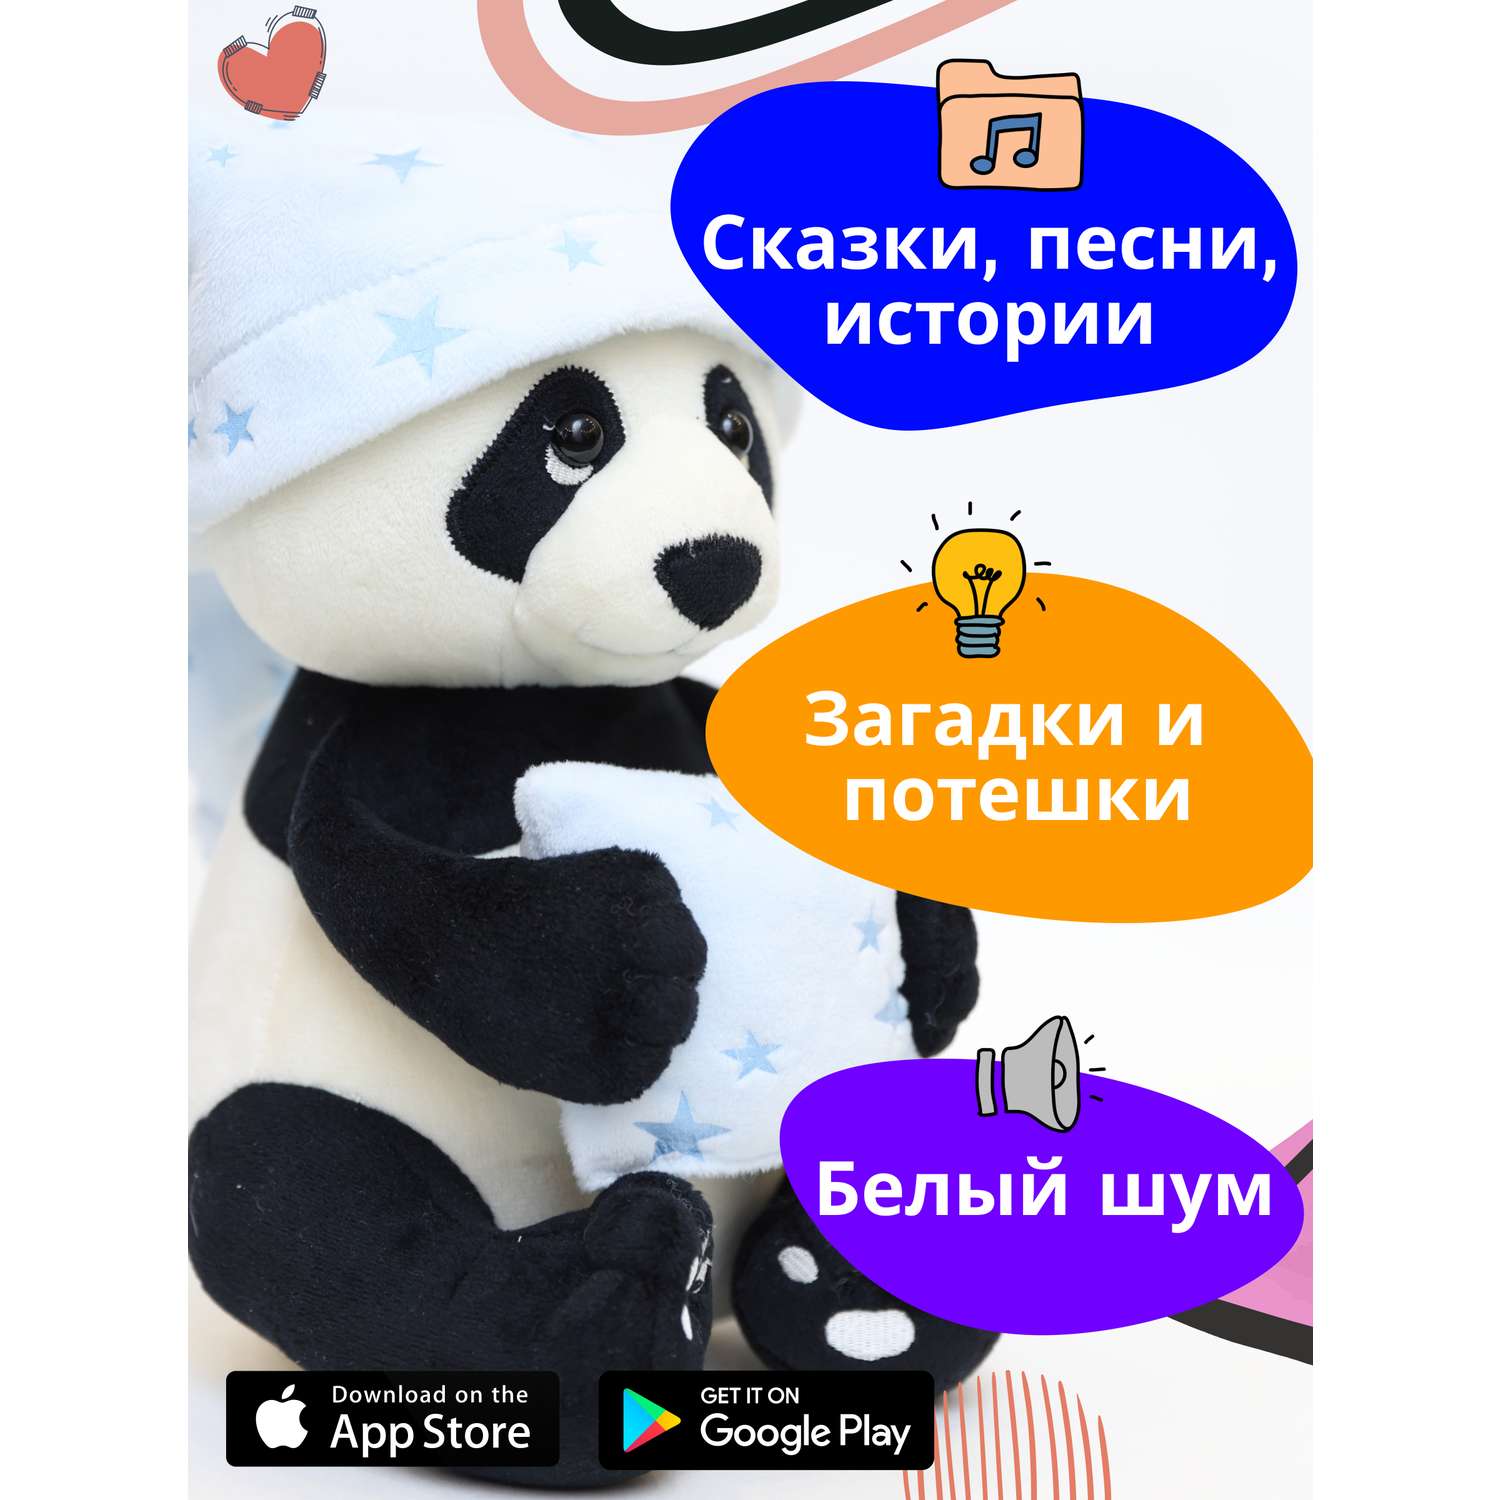 Игрушка развивающая мягкая ДРУГ ЕНОТ интерактивная детская Панда - фото 4